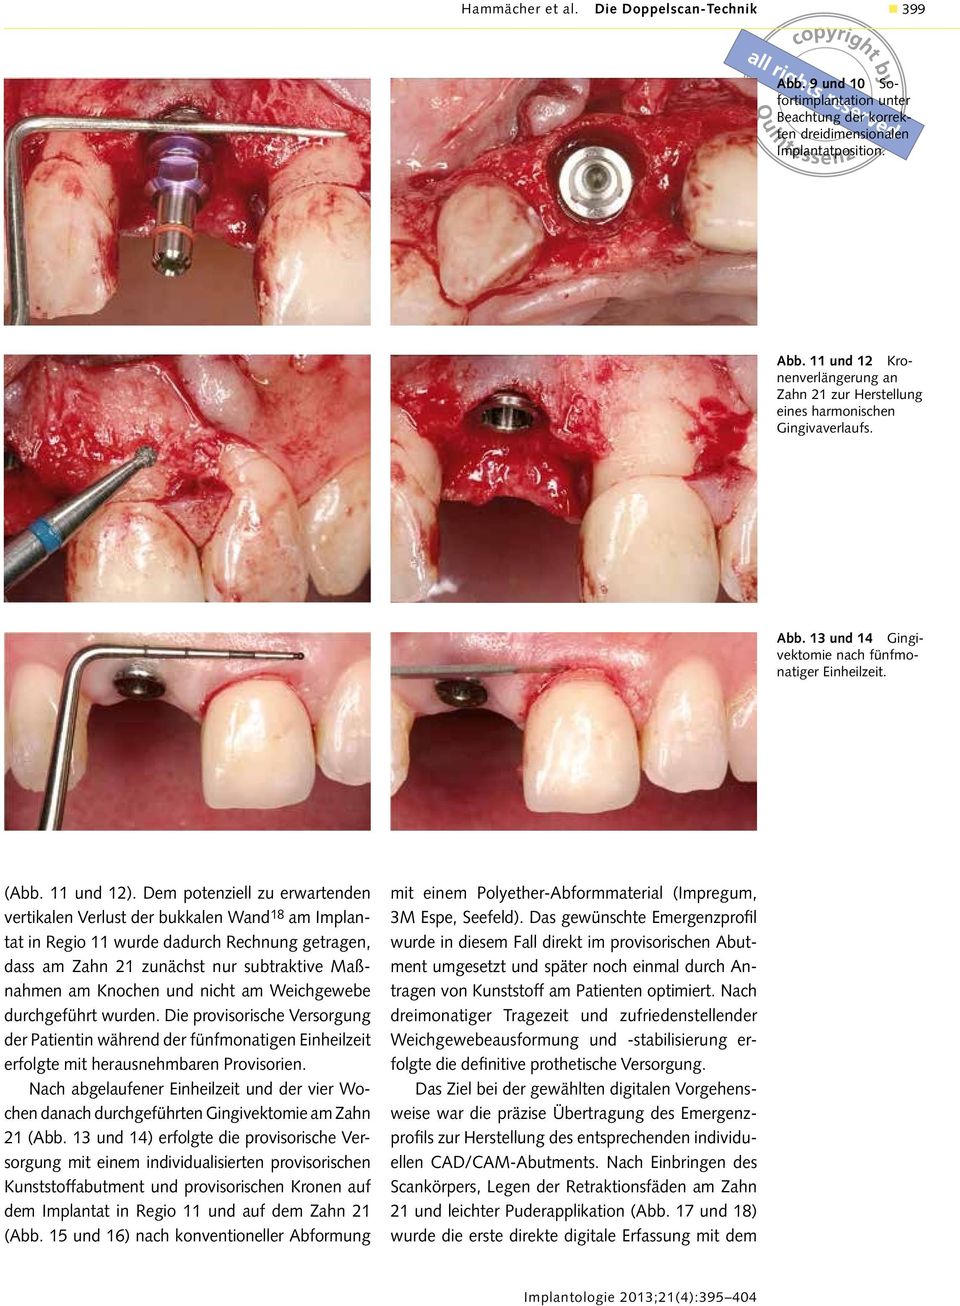 Dem potenziell zu erwartenden vertikalen Verlust der bukkalen Wand 18 am Implantat in Regio 11 wurde dadurch Rechnung getragen, dass am Zahn 21 zunächst nur subtraktive Maßnahmen am Knochen und nicht